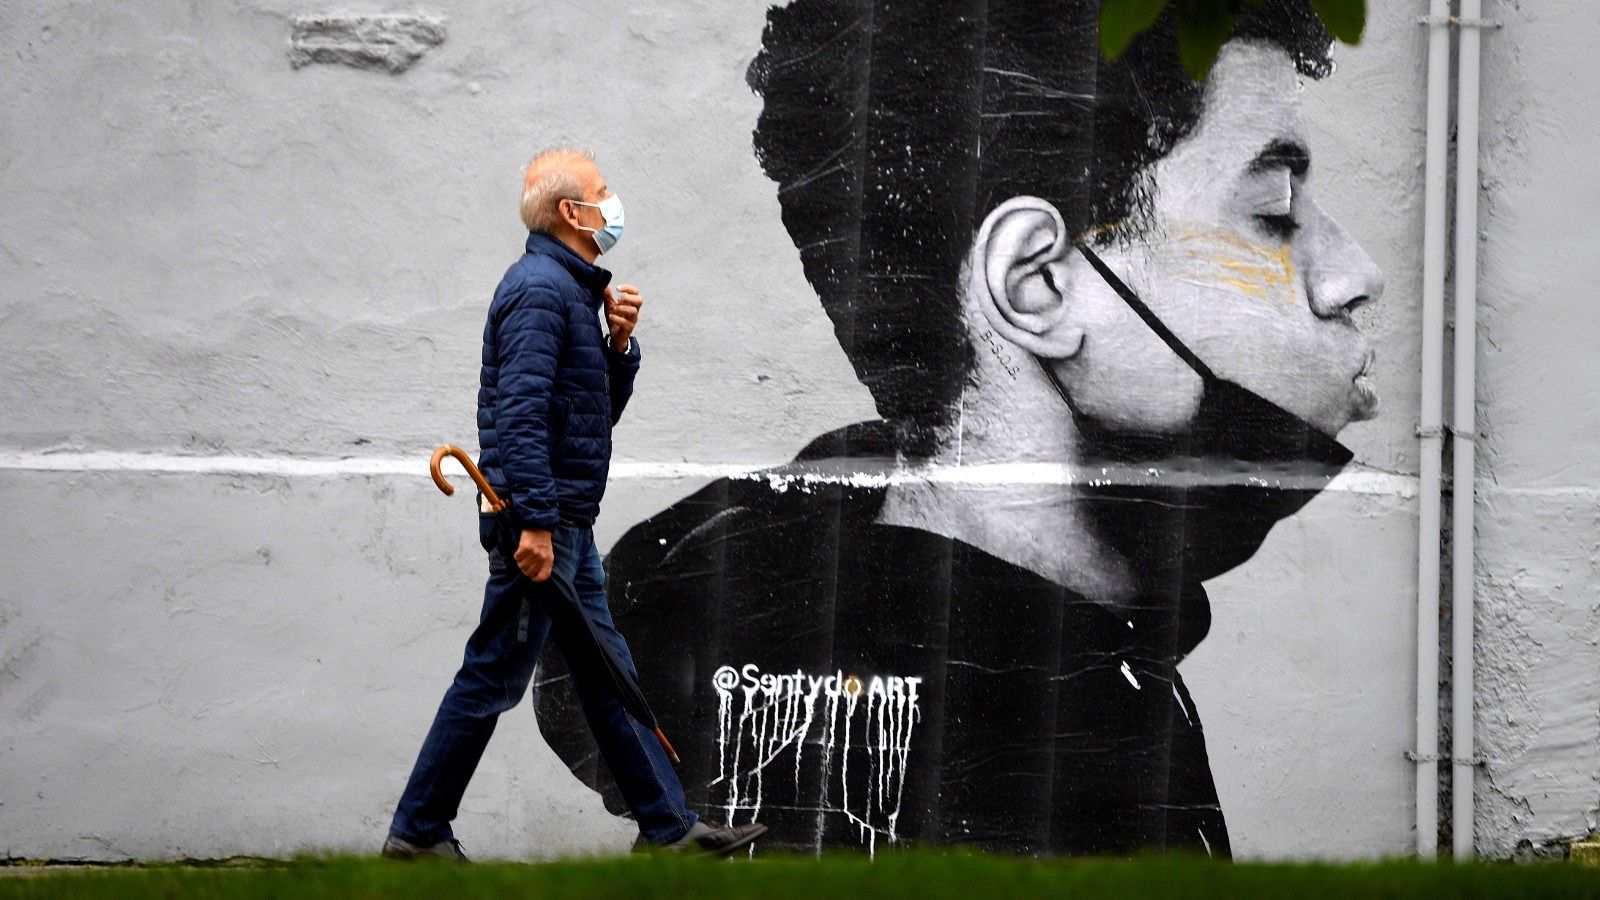 Un hombre con mascarilla camina delante de una obra del artista @Sentydo ART en Oviedo